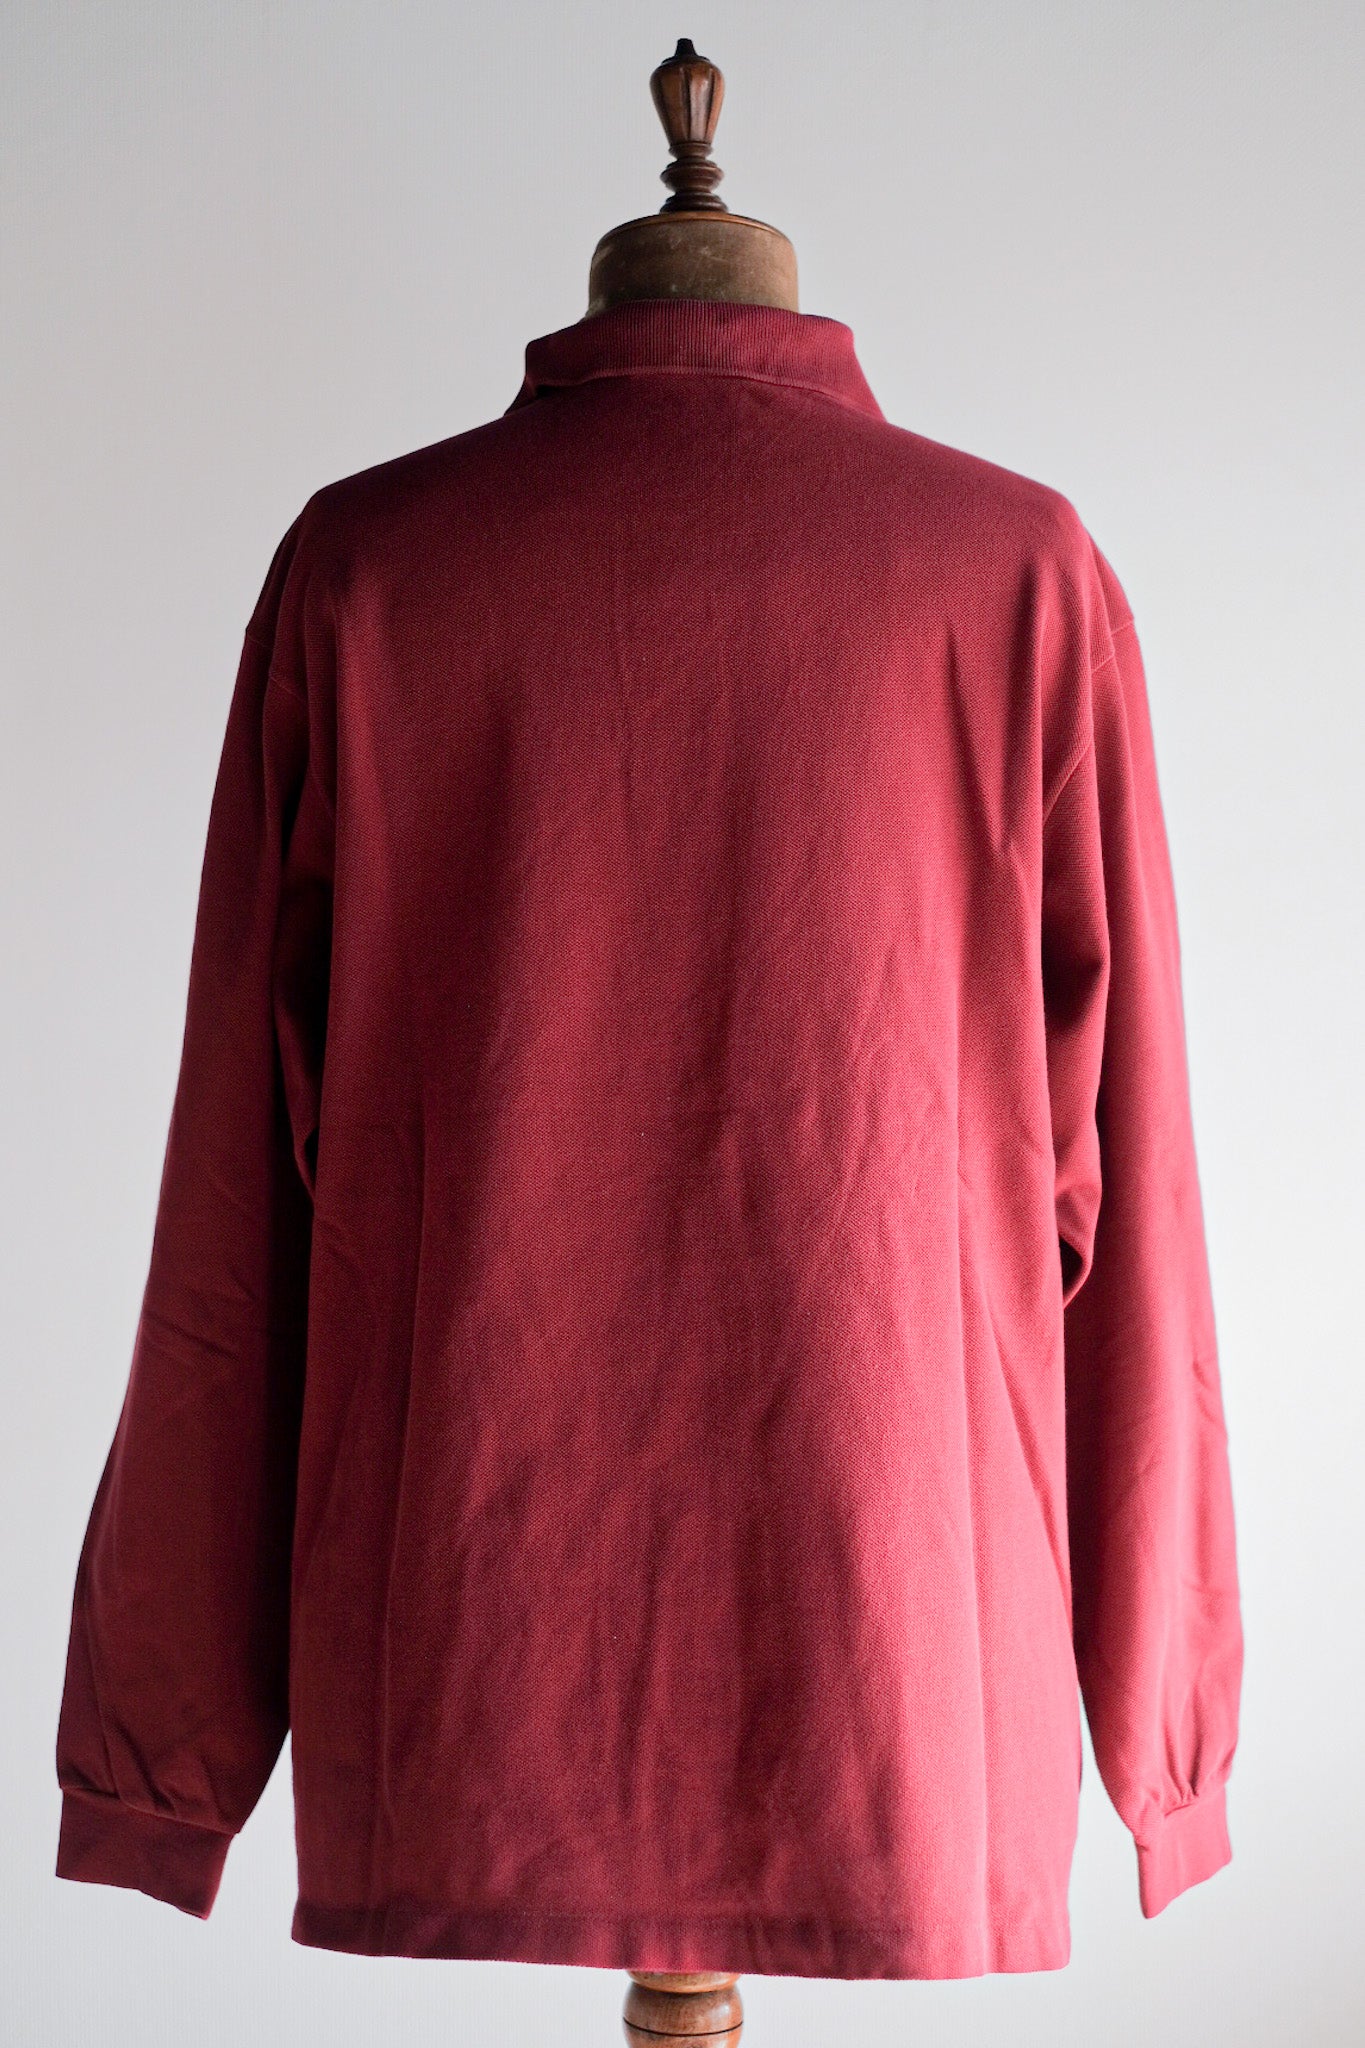 [~ 80 년대] Chemise lacoste l/s 폴로 셔츠 크기 .6 "Burgundy"